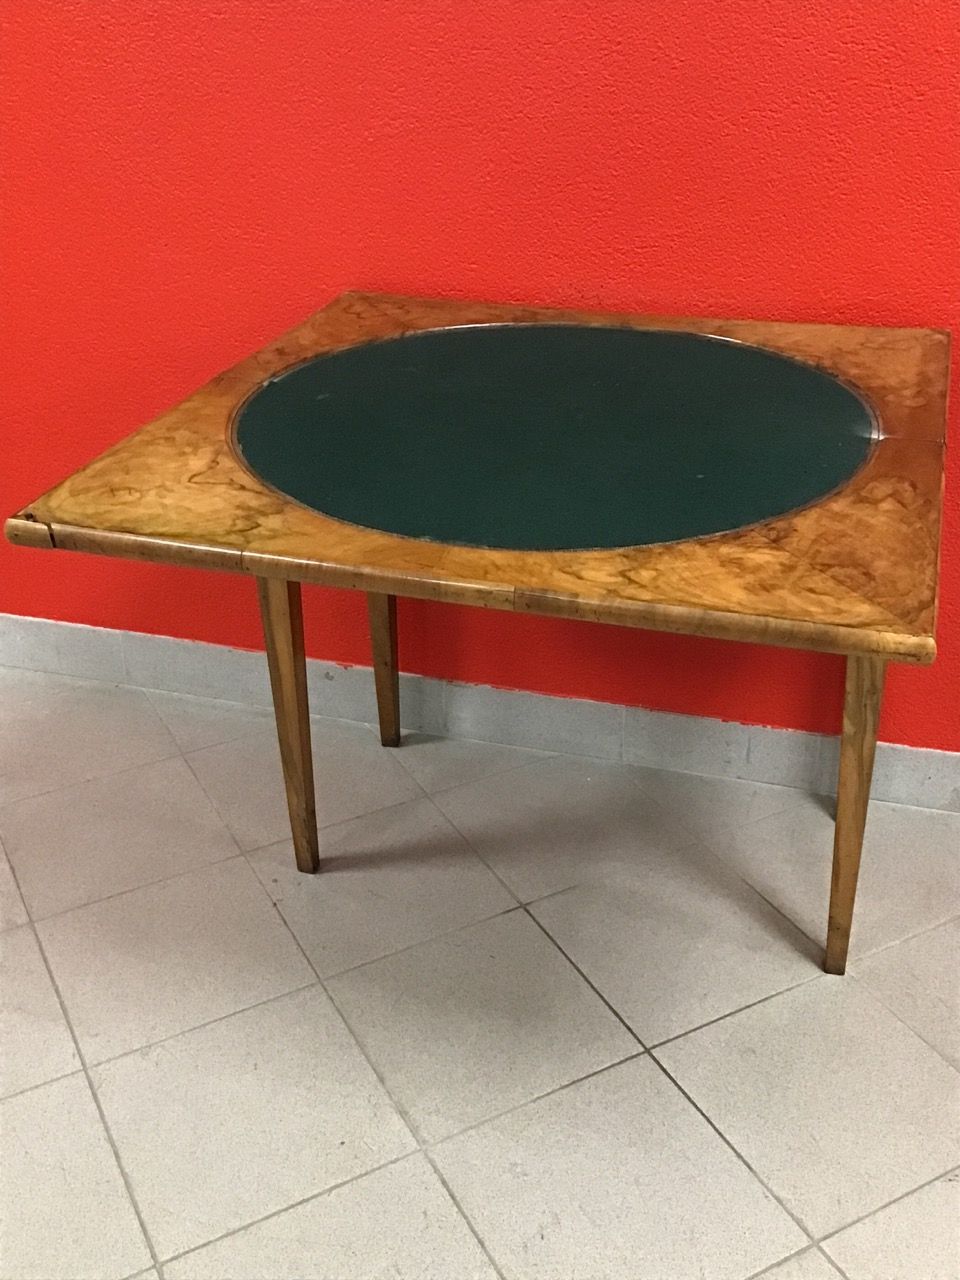 Null Une petite table à jeu pliante avec accident.